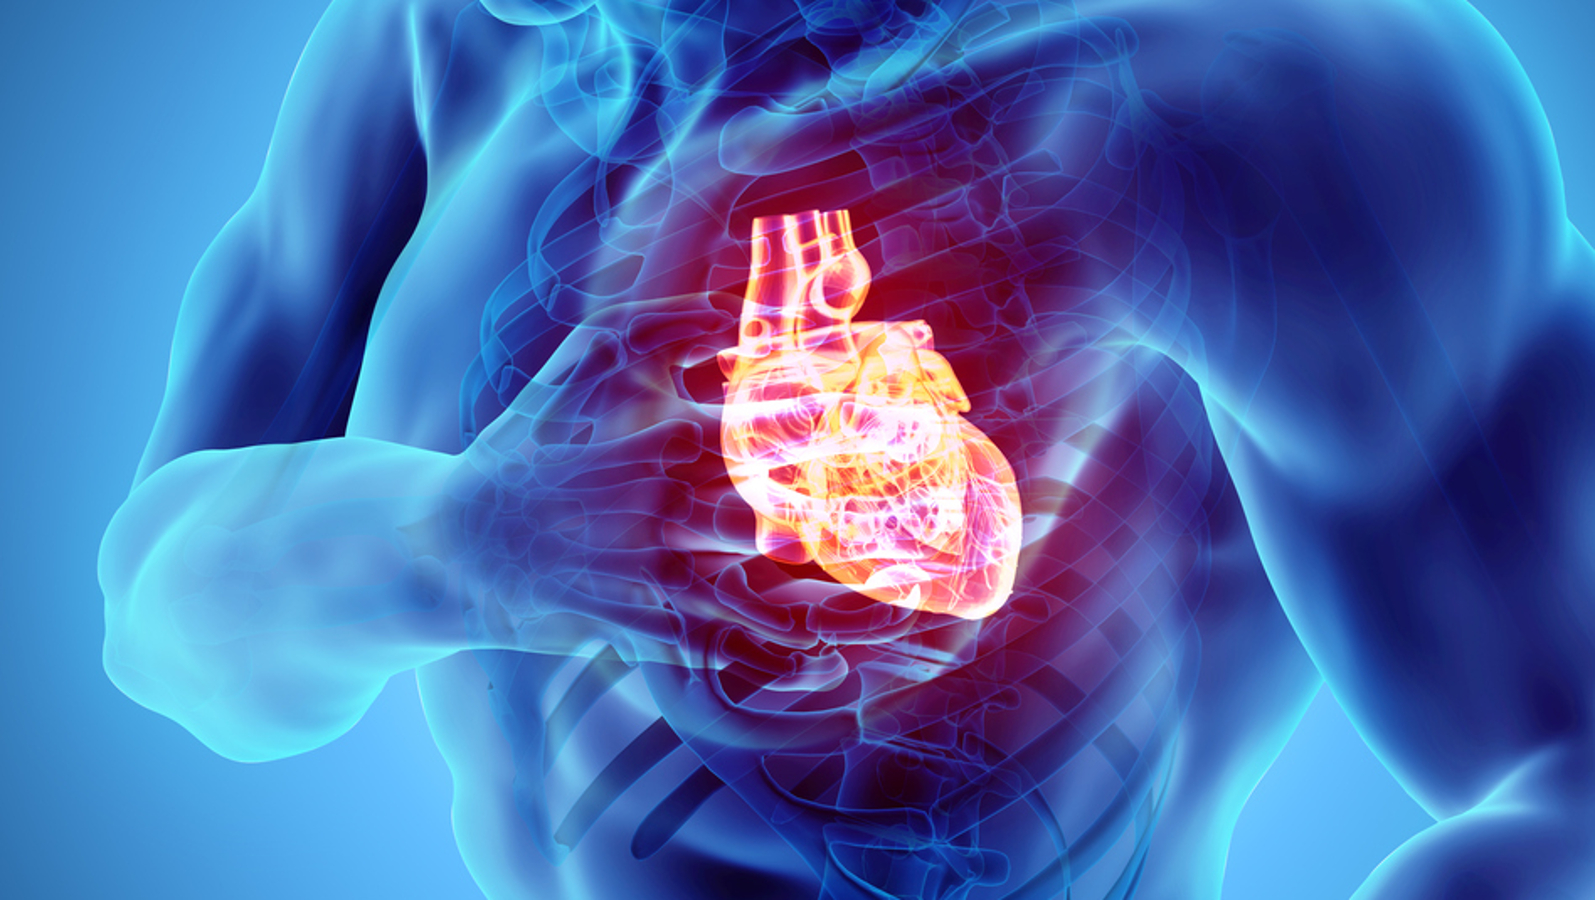 Suplemento que pode aumentar risco de infarto, segundo estudo